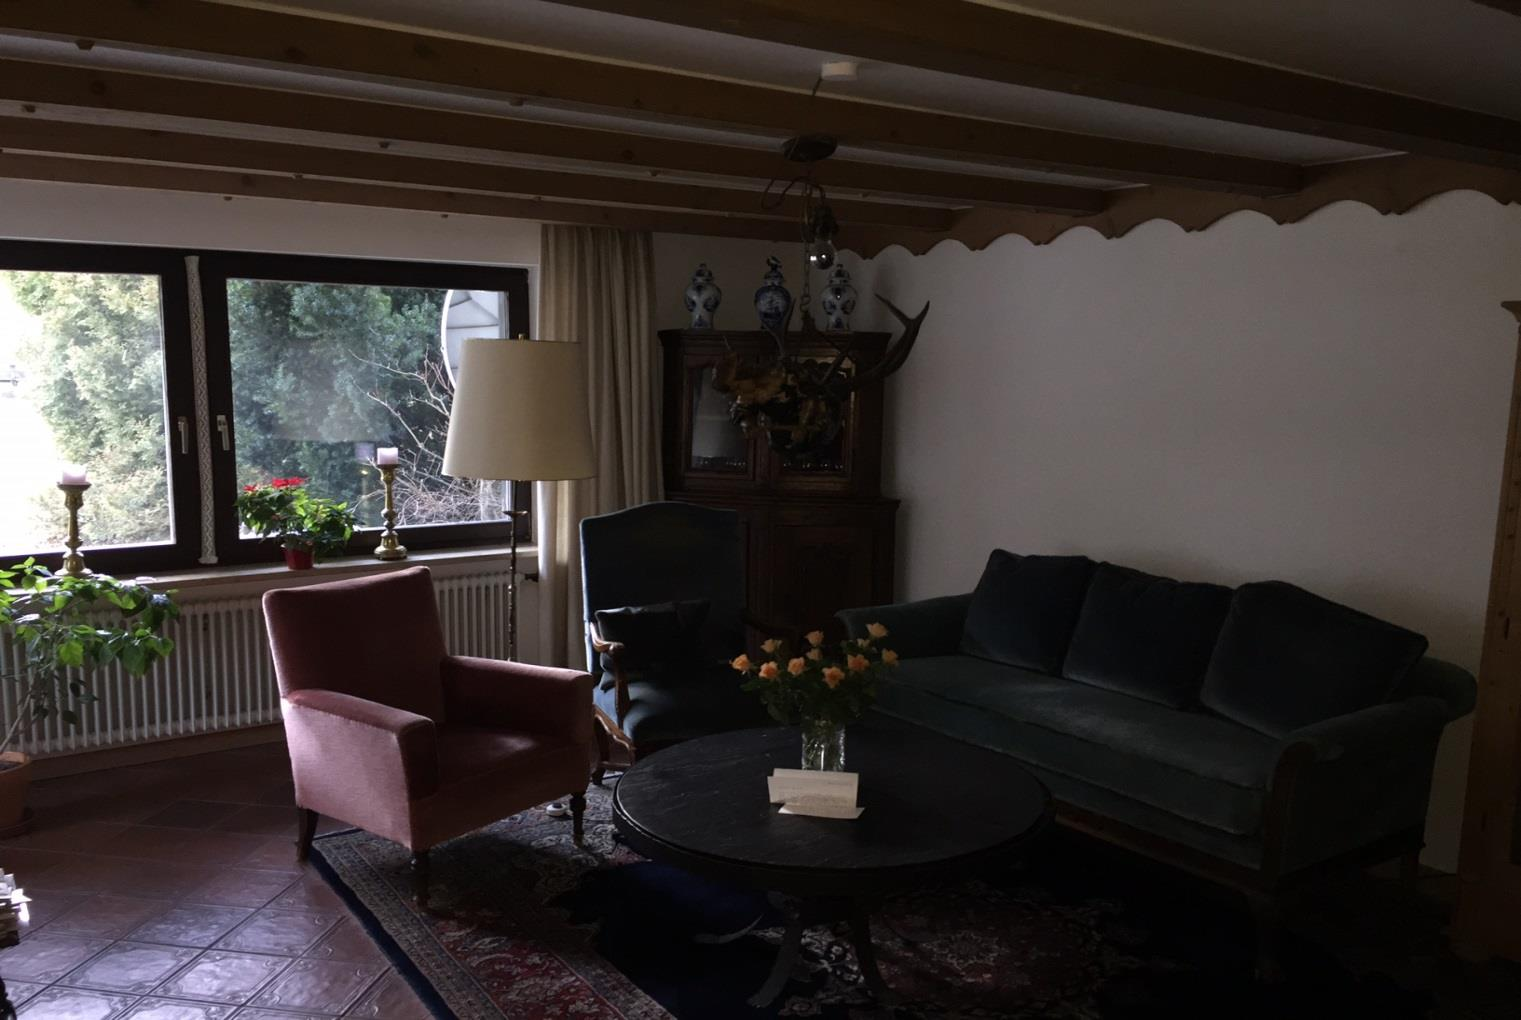 Wohn- und Essbereich sind mit hochwertigen Fliesen ausgelegt. Die Vollholzdecke im Essbereich sowie die Holzbalken im Wohnzimmer geben den Räumen dabei das typisch bayrische Landhausflair.